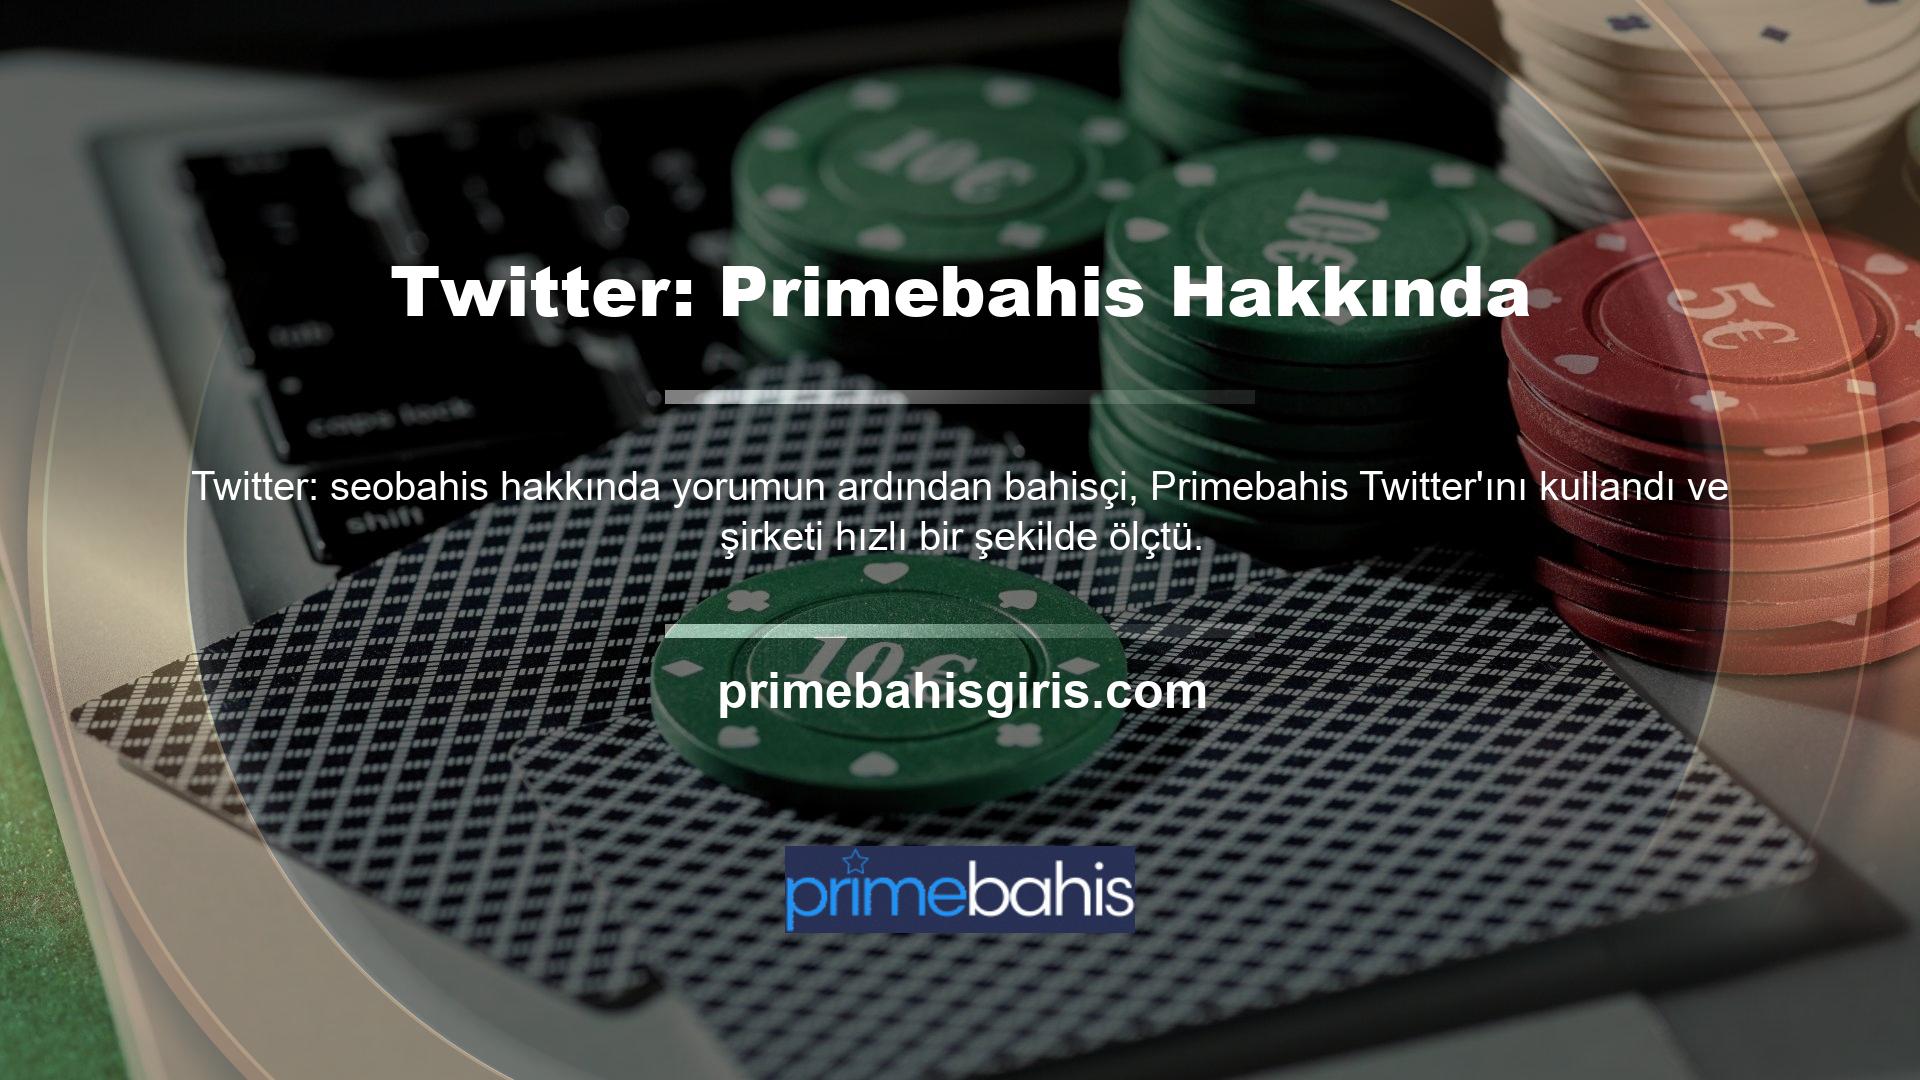 Primebahis Twitter'ı tüm oyunculara uygun birinci sınıf oyun ve bankacılık hizmetleri sunmaktadır